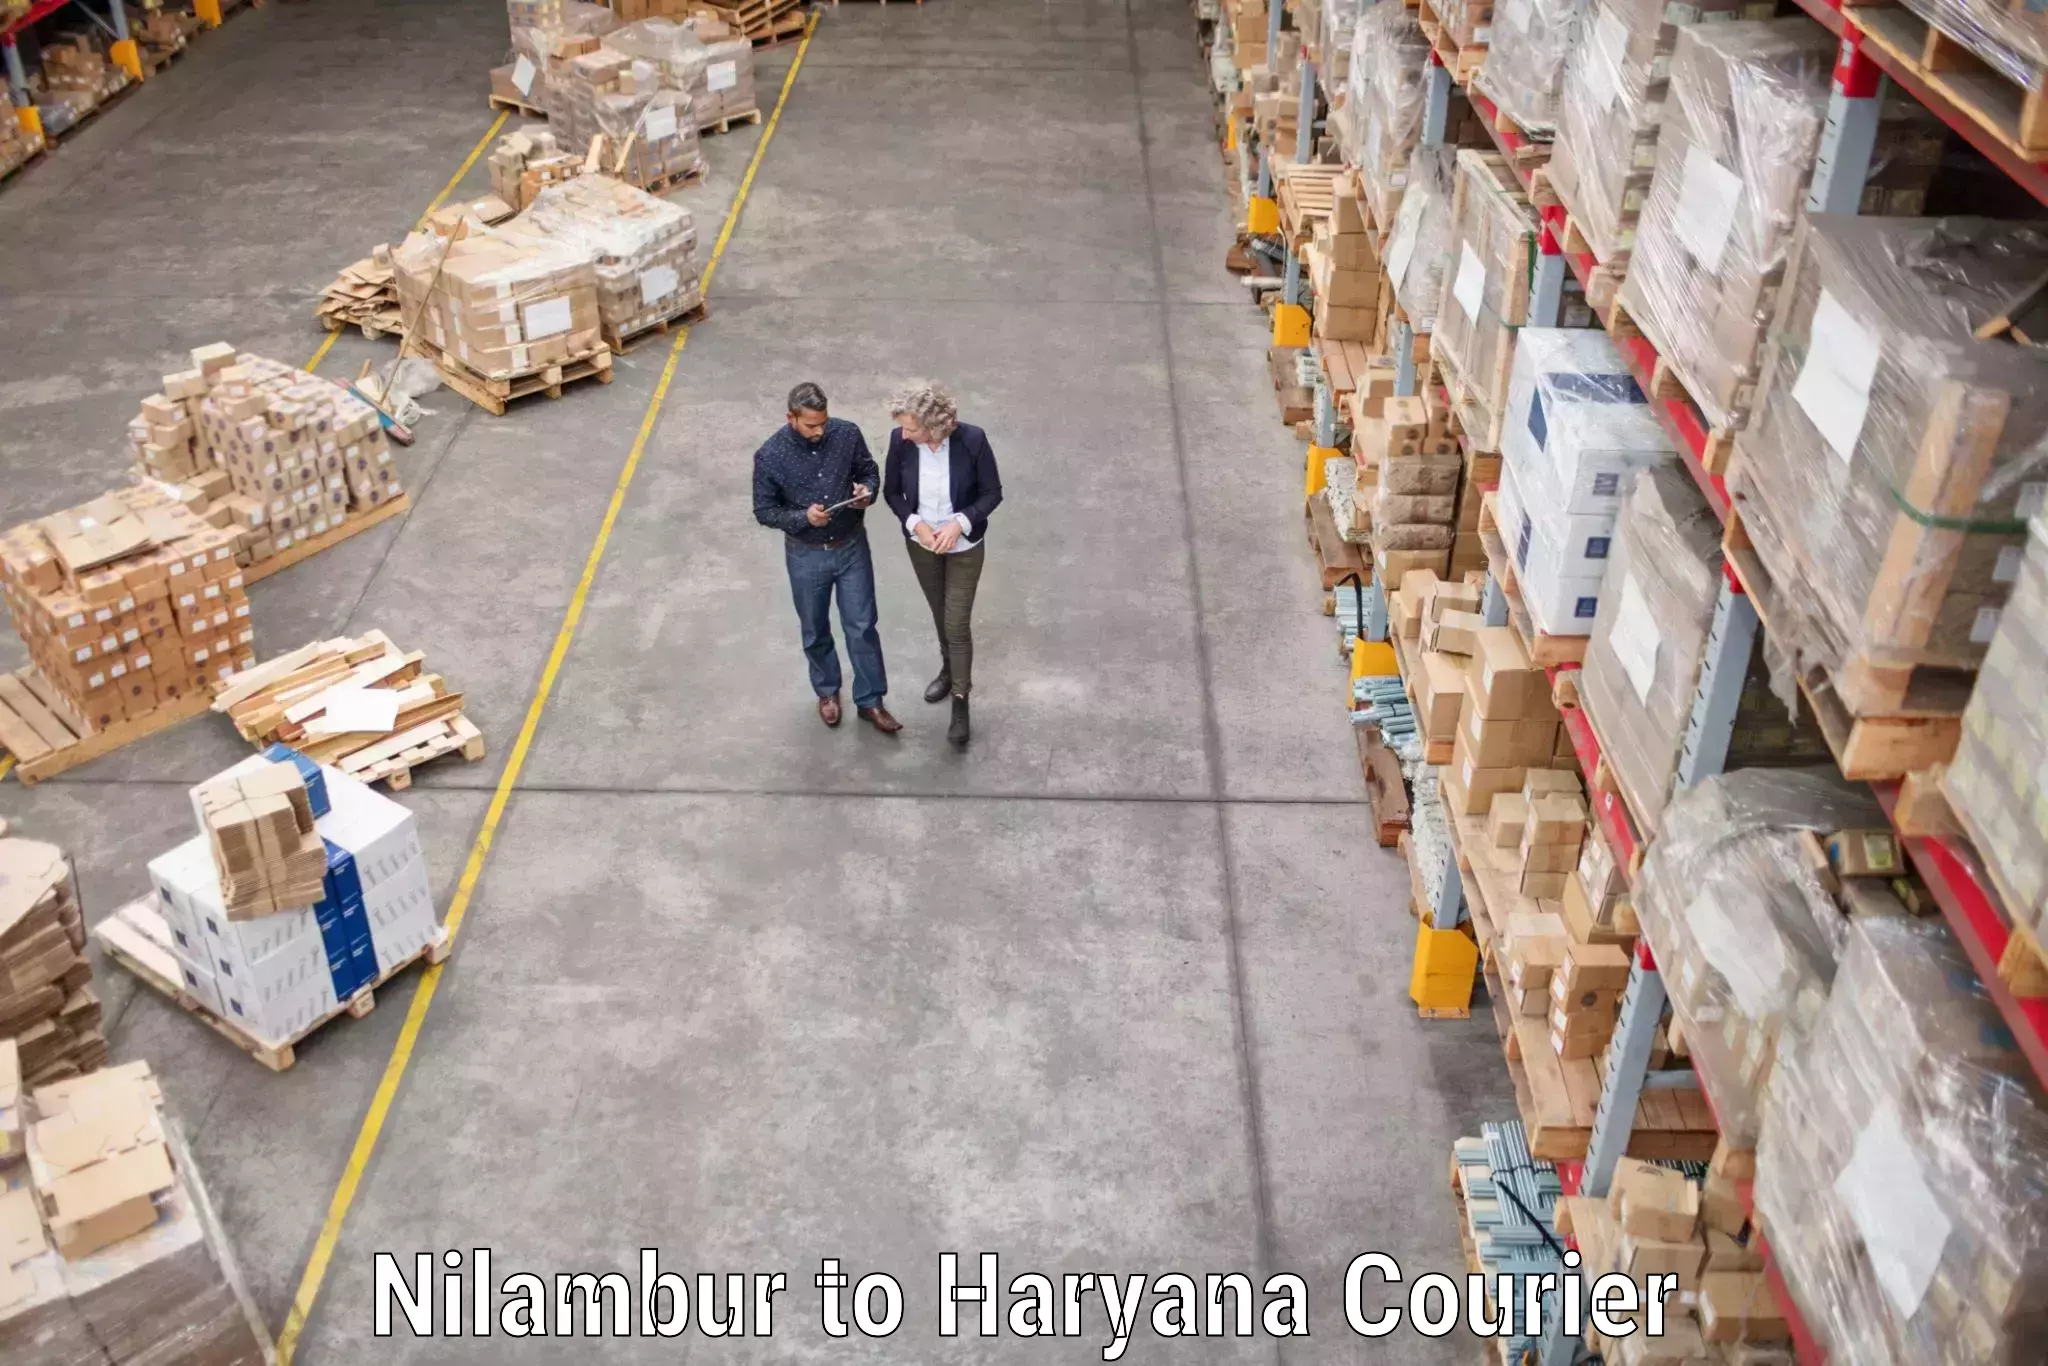 Trusted moving company Nilambur to Ambala